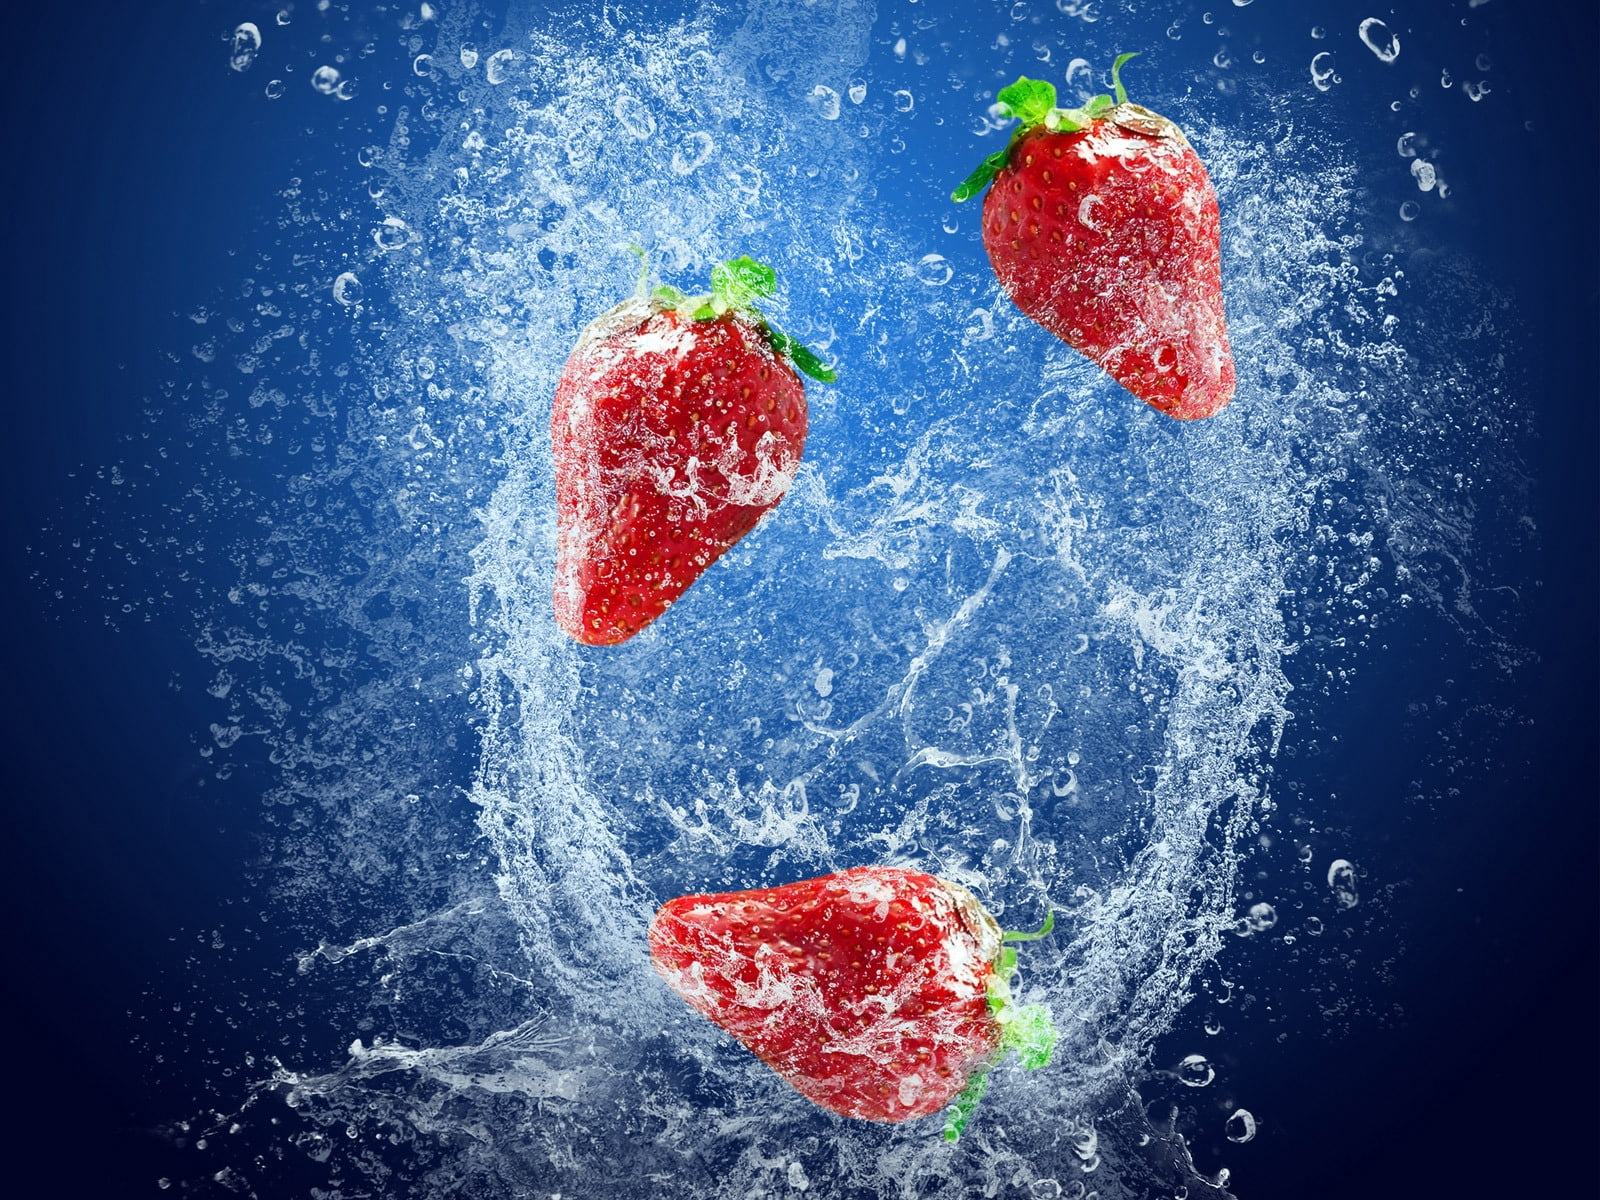 three red strawberries, strawberry, water, splashes, drops, splashing